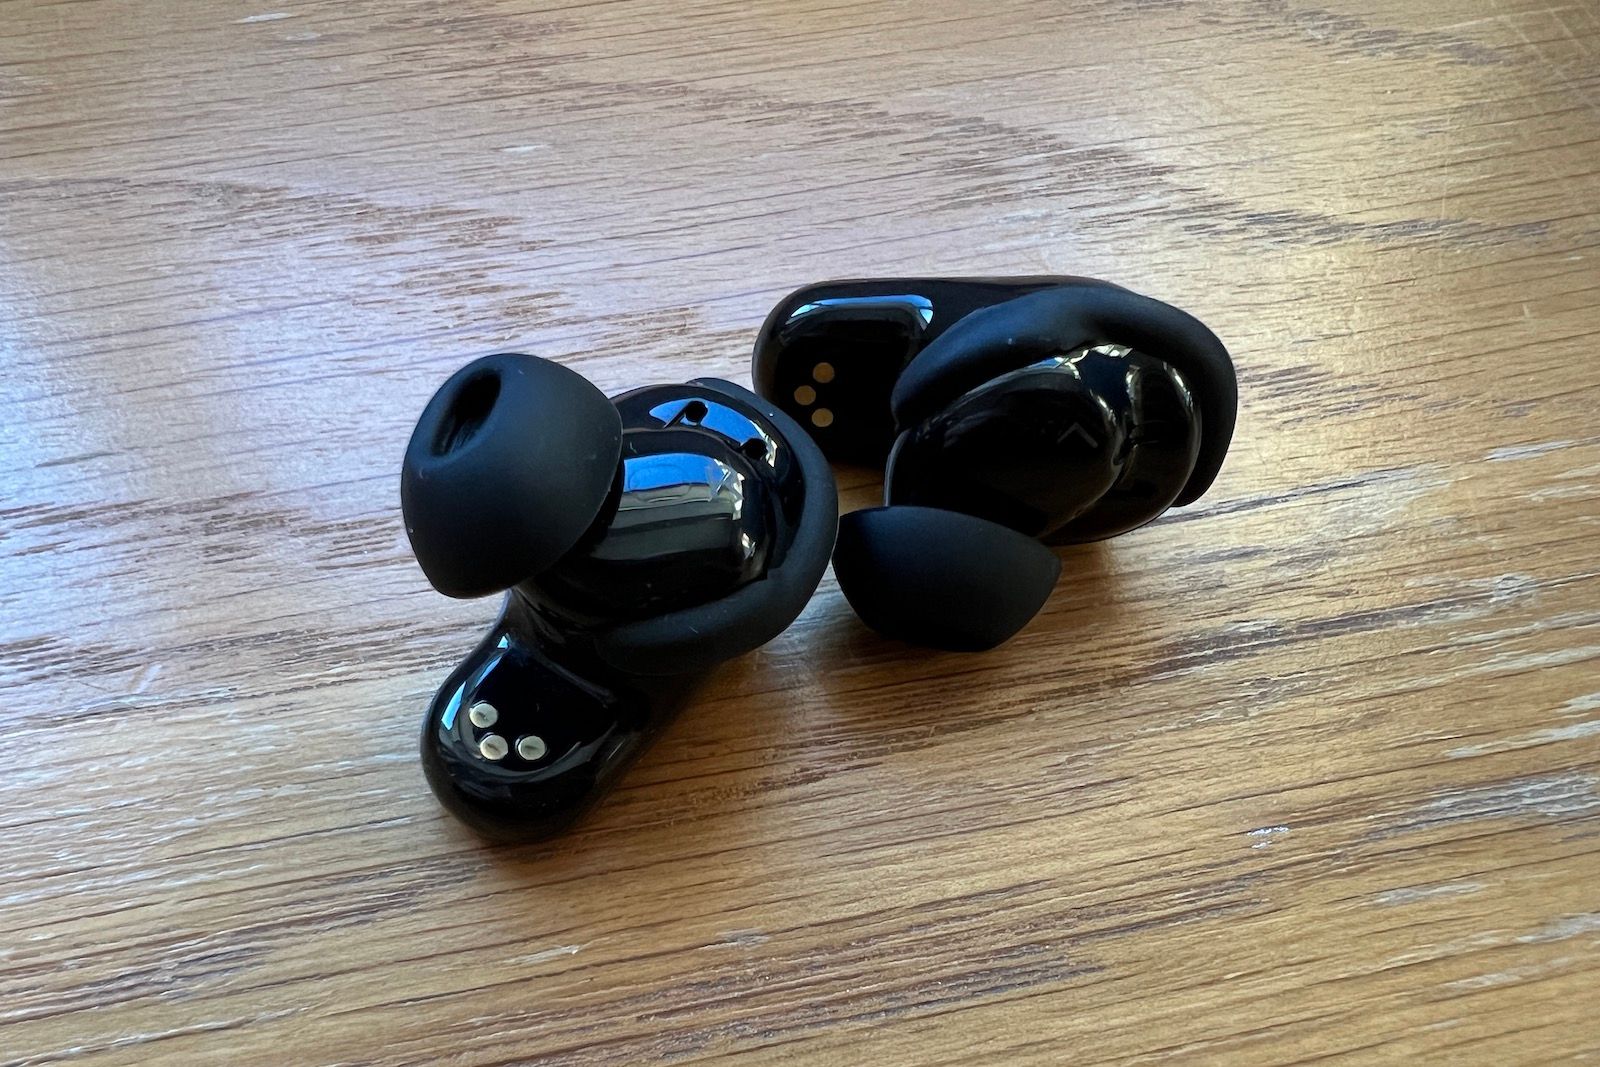 Nuevos auriculares Bose QuietComfort II, inalámbricos, Bluetooth, los  mejores auriculares intrauditivos con cancelación de ruido personalizada y